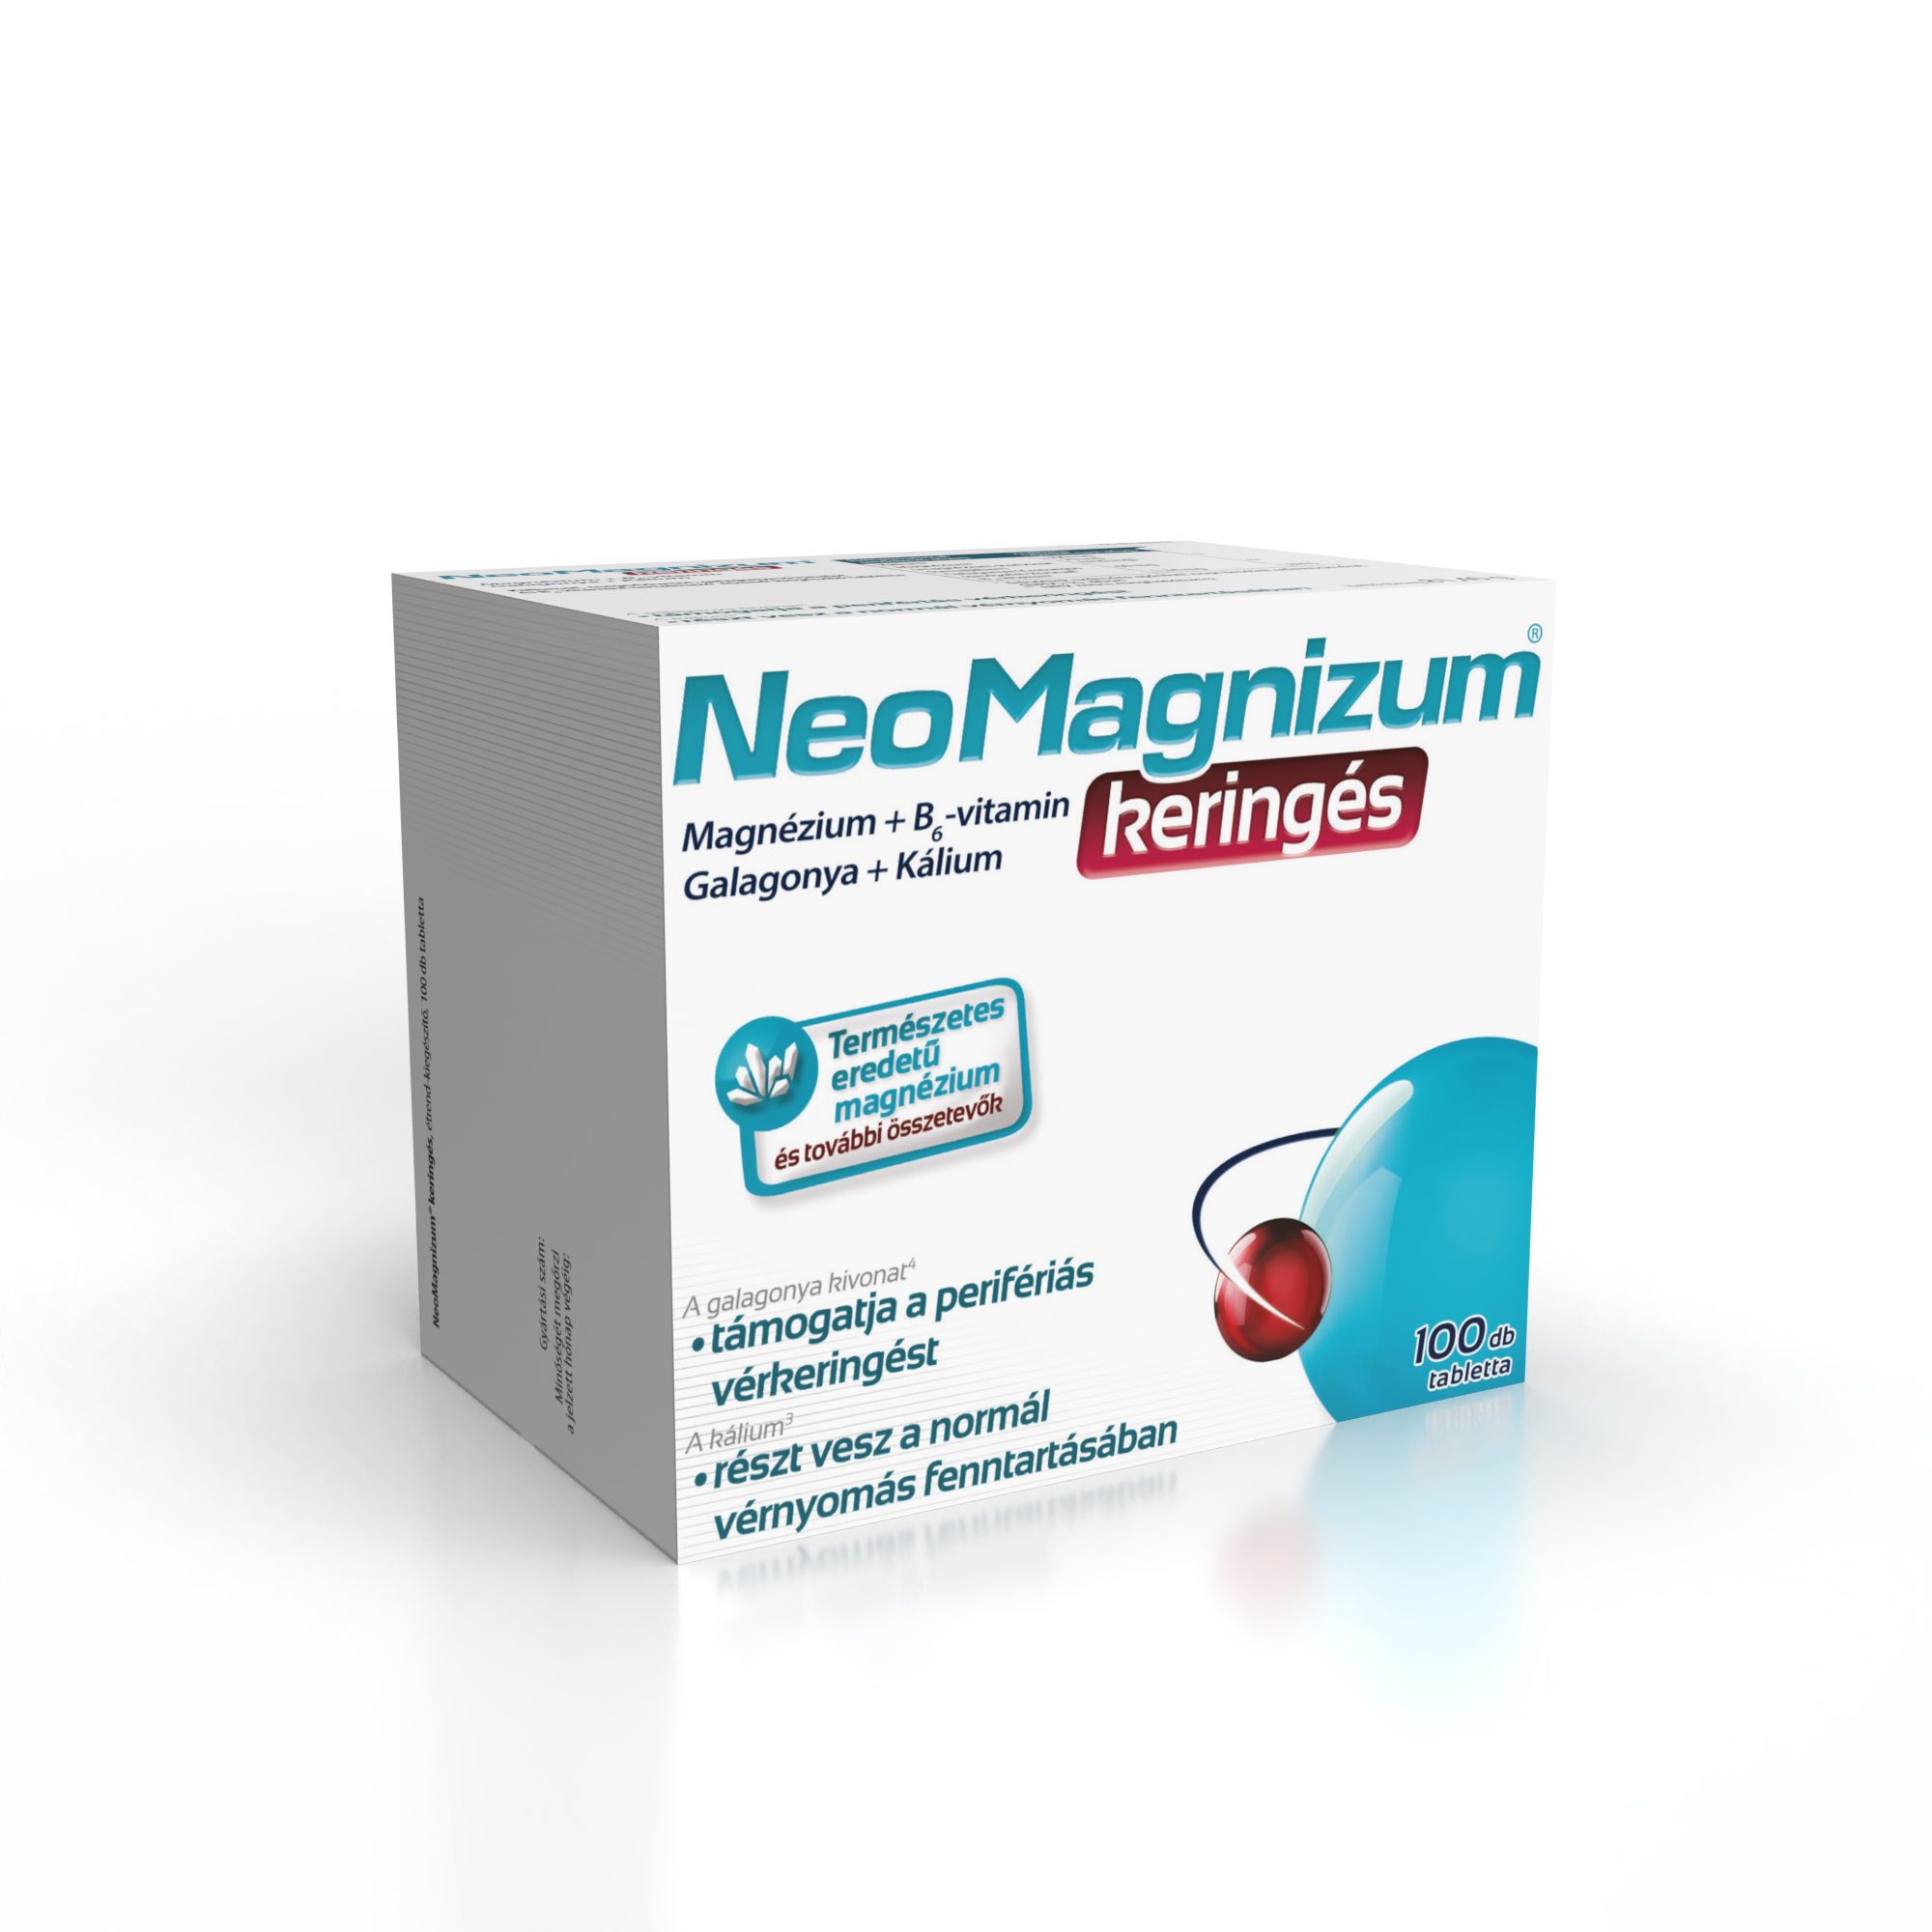 NeoMagnizum keringés káliumot, magnéziumot, galagonya kivonatot és B6-vitamint tartalmazó tabletta